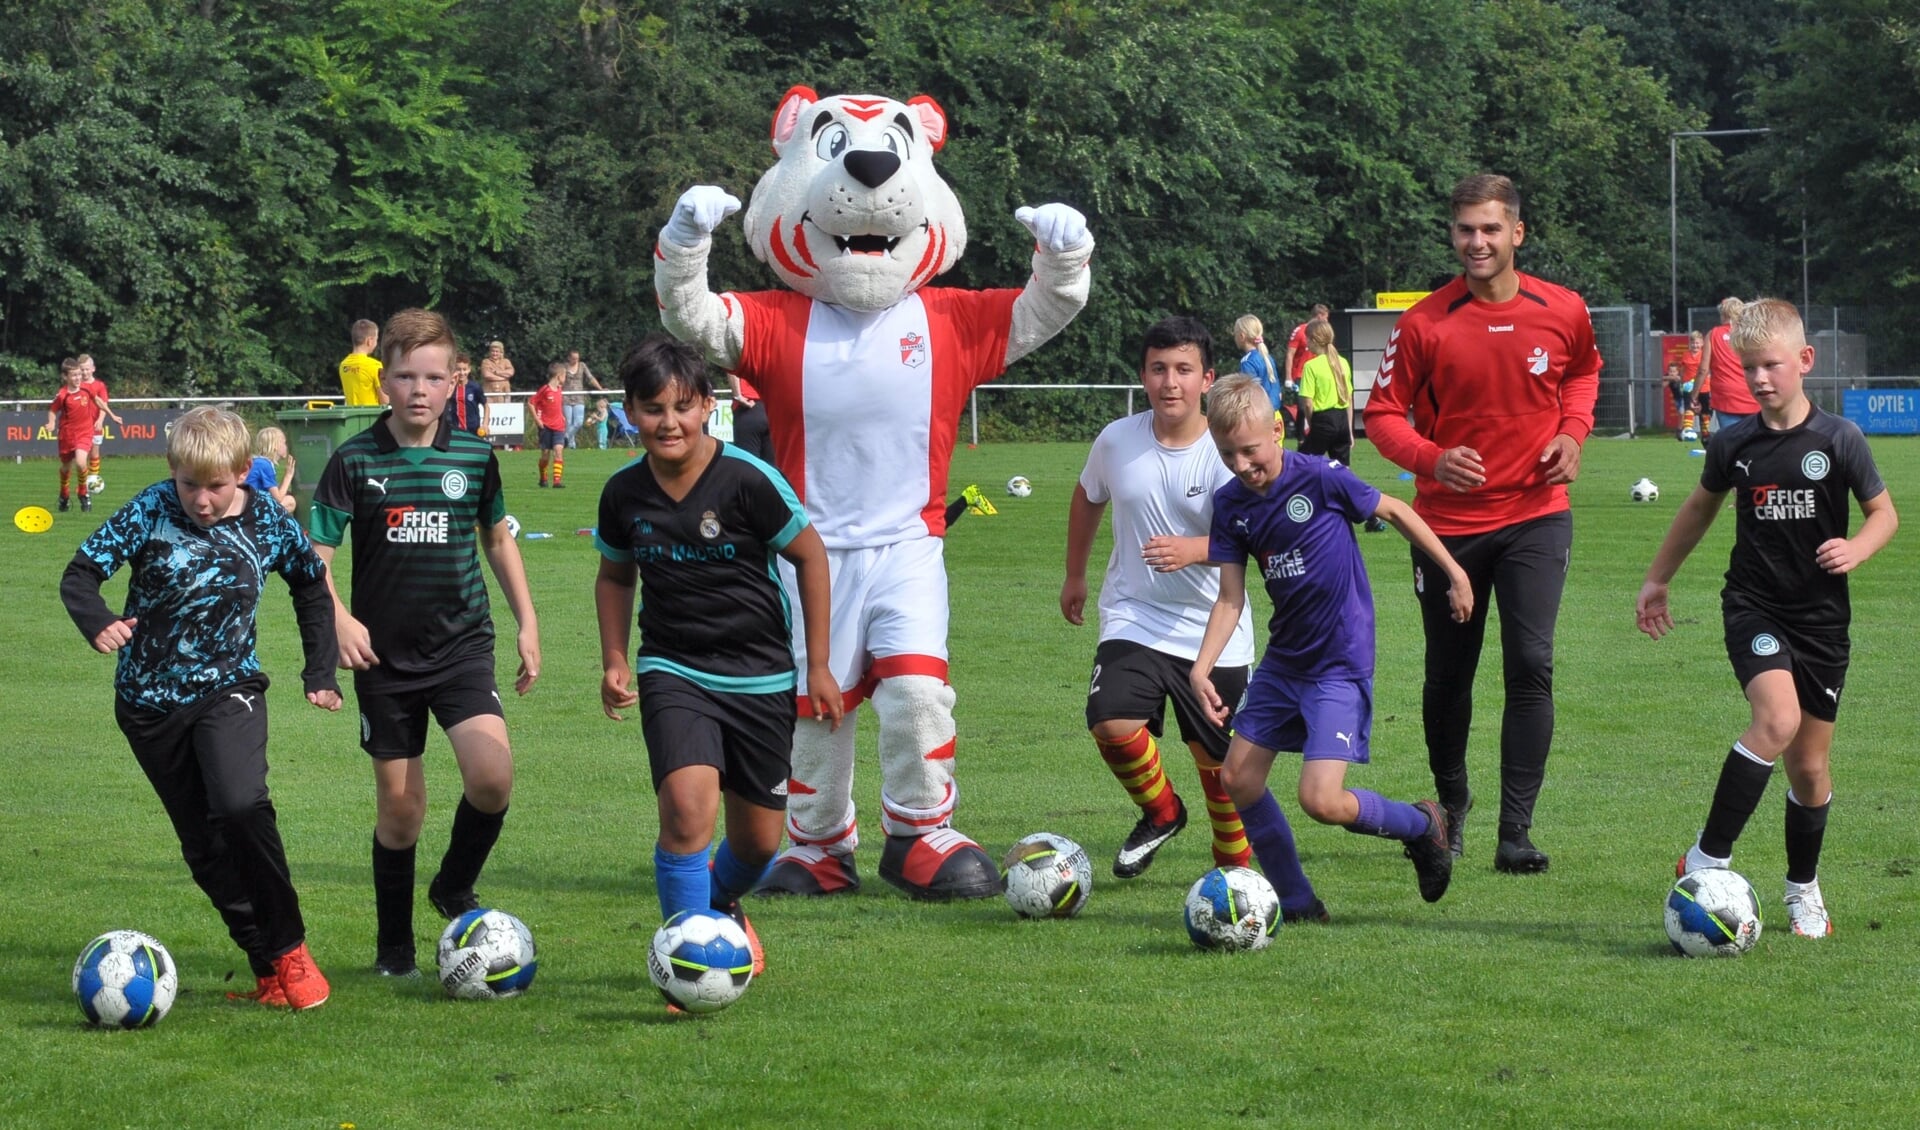 Jonge voetballertjes oefenen het dribbelen onder het toeziend van de FC Emmen-mascotte.